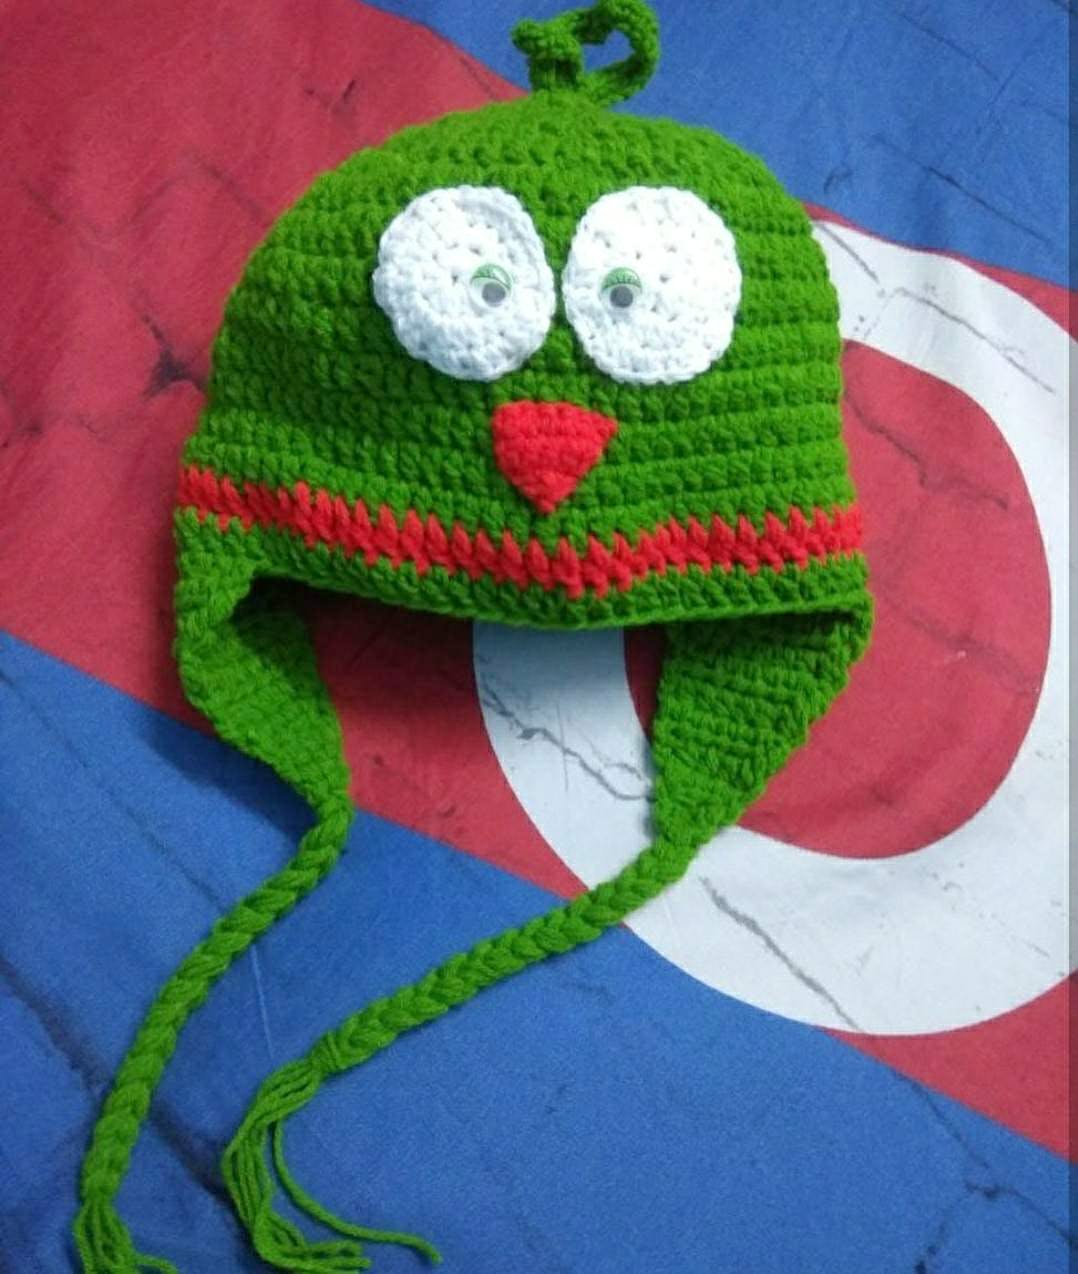 Green,Crochet,Cap,Knit cap,Headgear,Art,Textile,Beanie,Craft,Fictional character